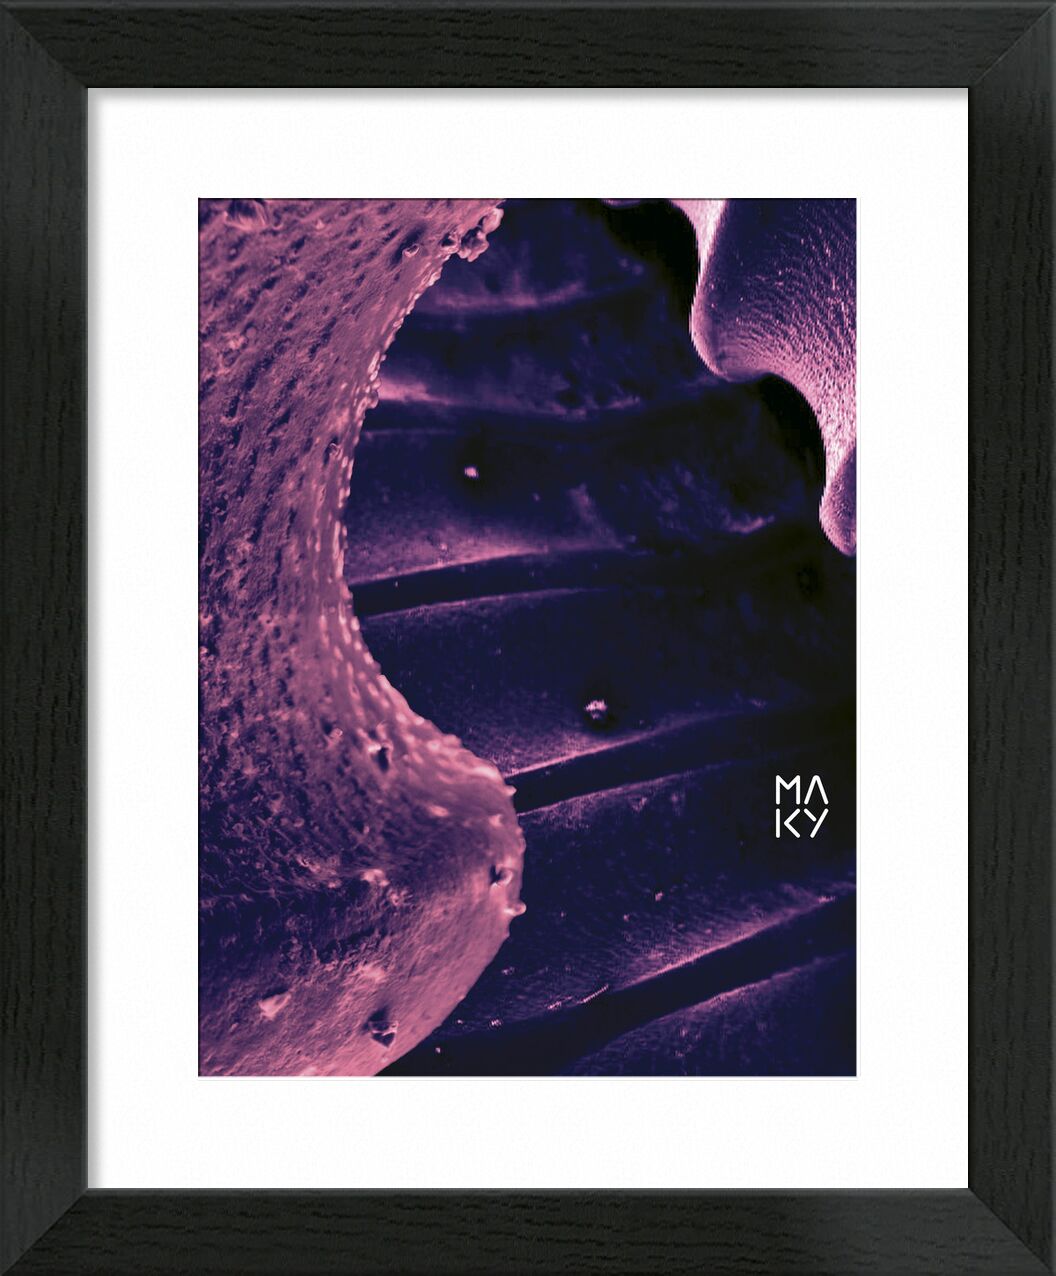 気4.1 from Maky Art, Prodi Art, digital collage, visual art, texture, electron microscopy, shell